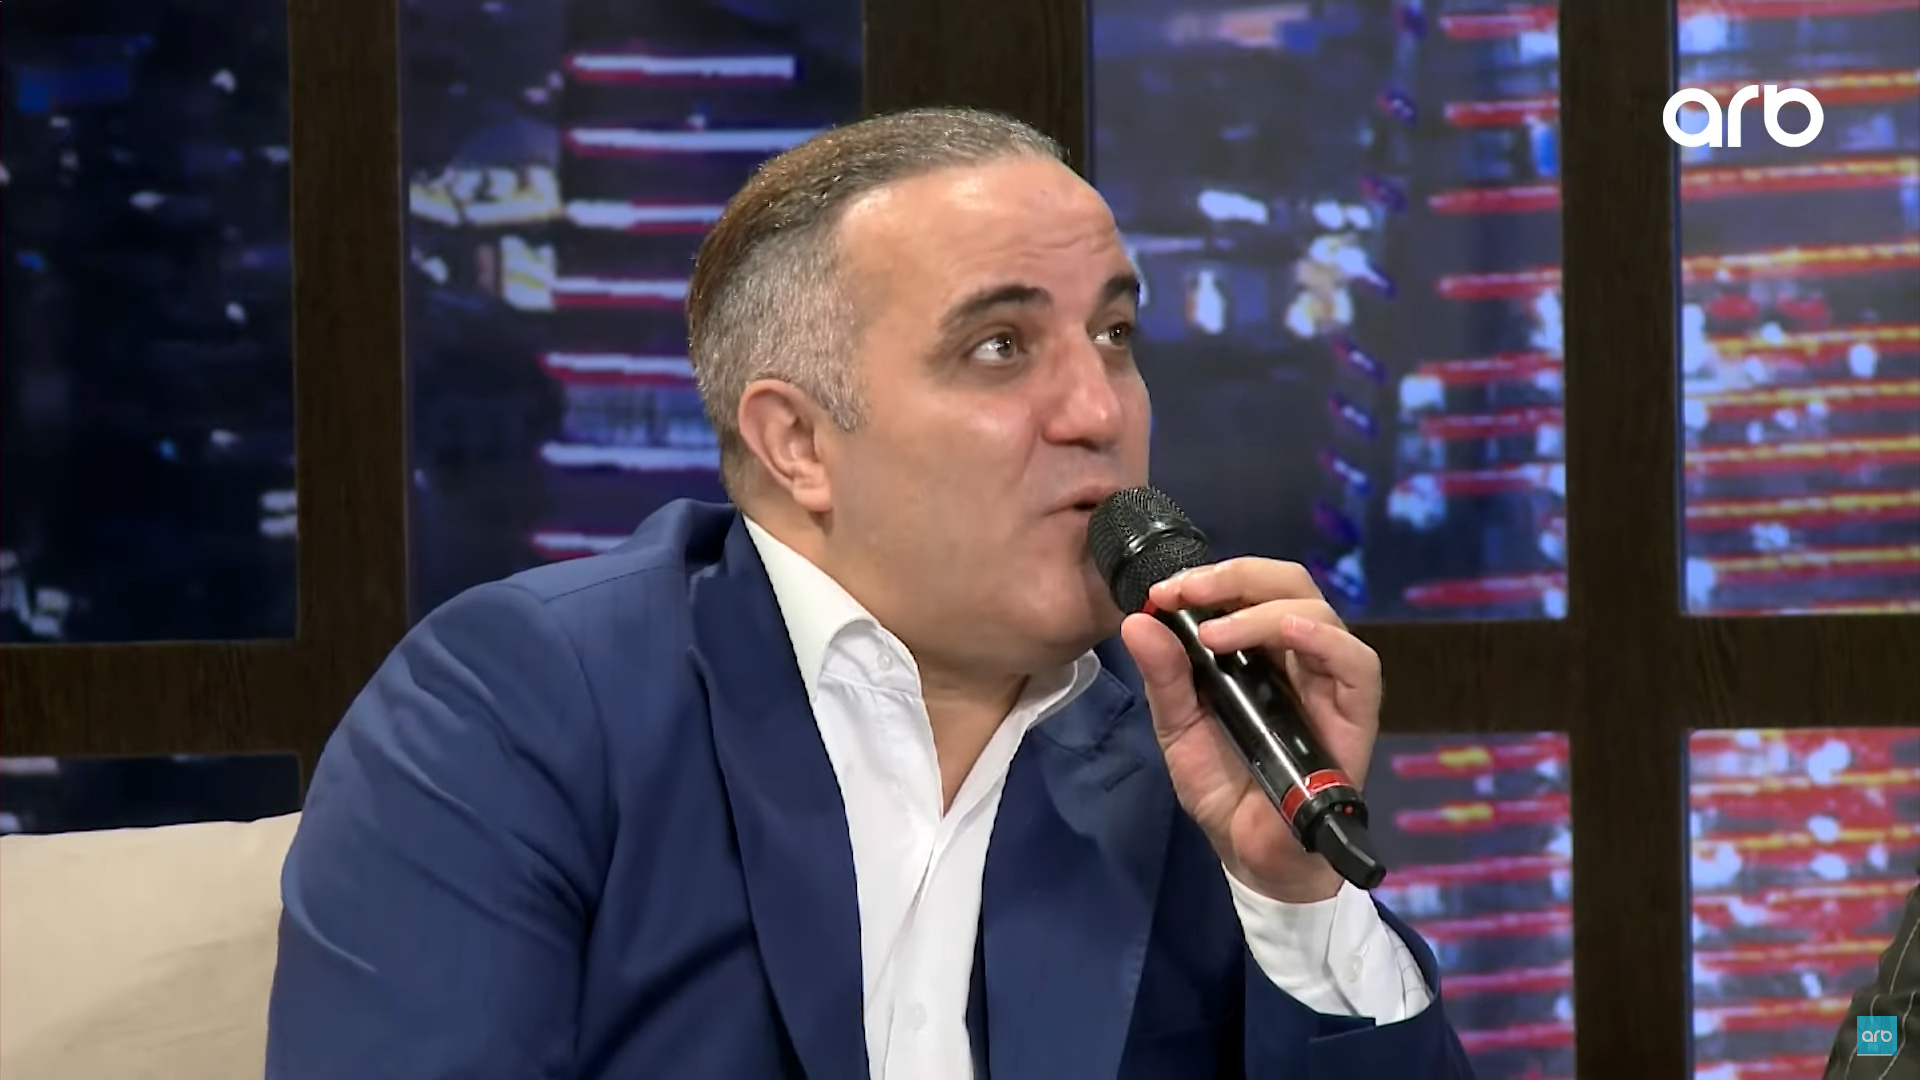 Eldəniz Məmmədov: "Deyirlər, qız övladını oxumağa qoyursunuz?" - VİDEO